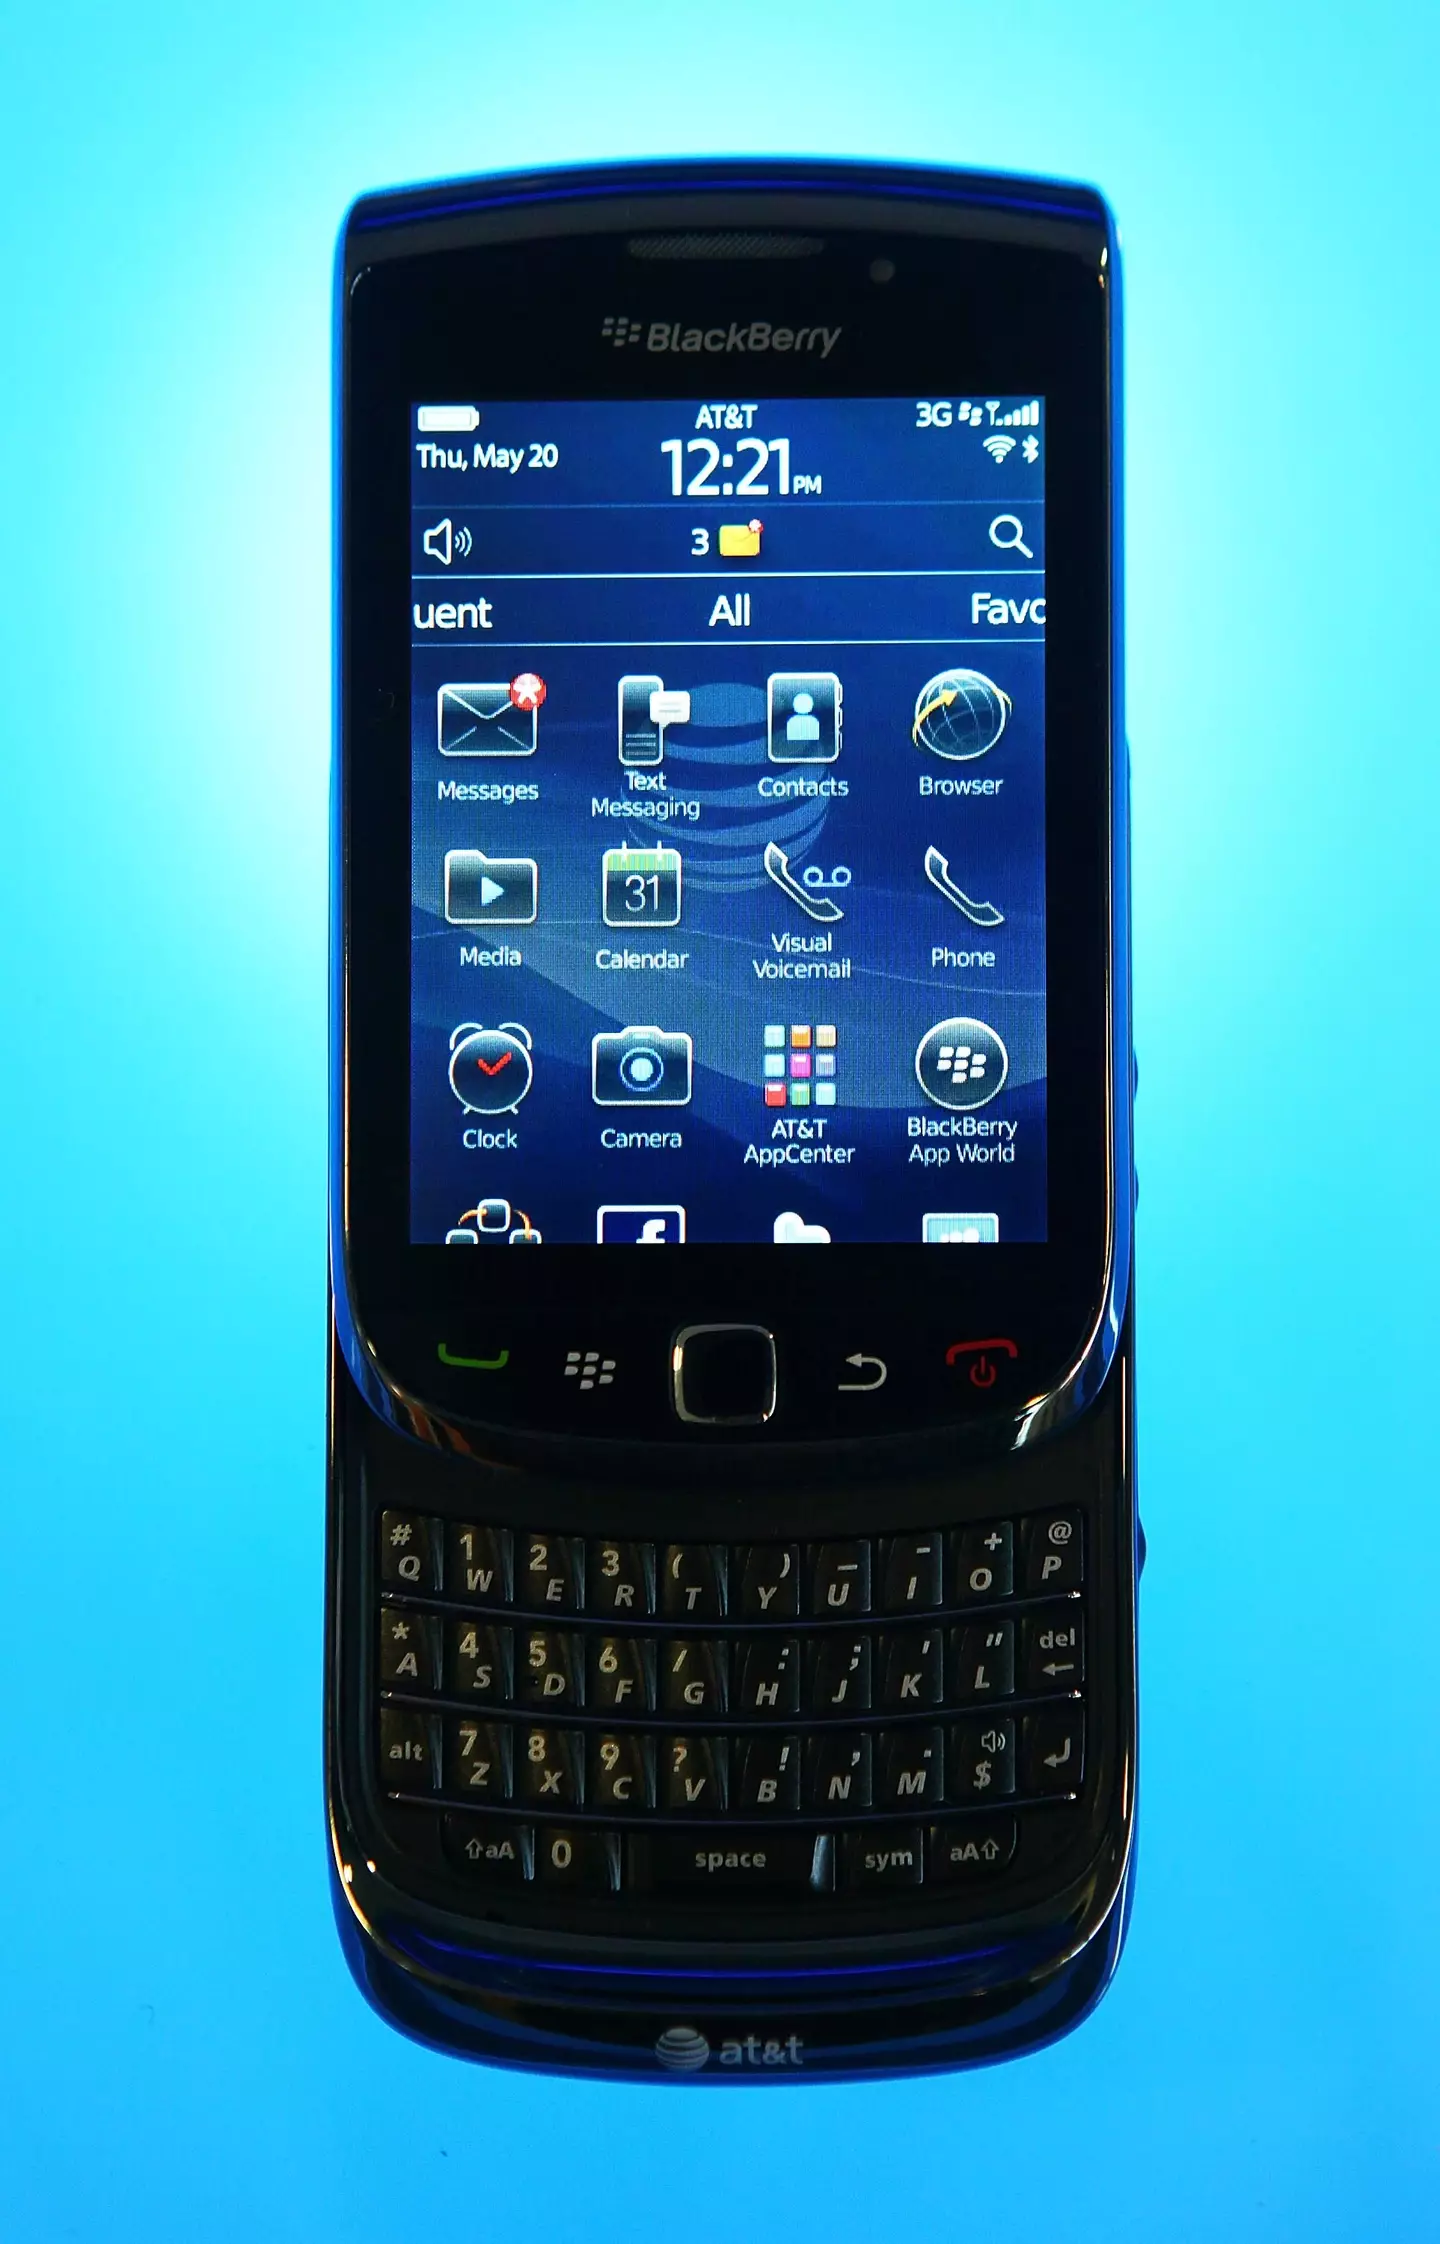 A Blackberry back in 2010.